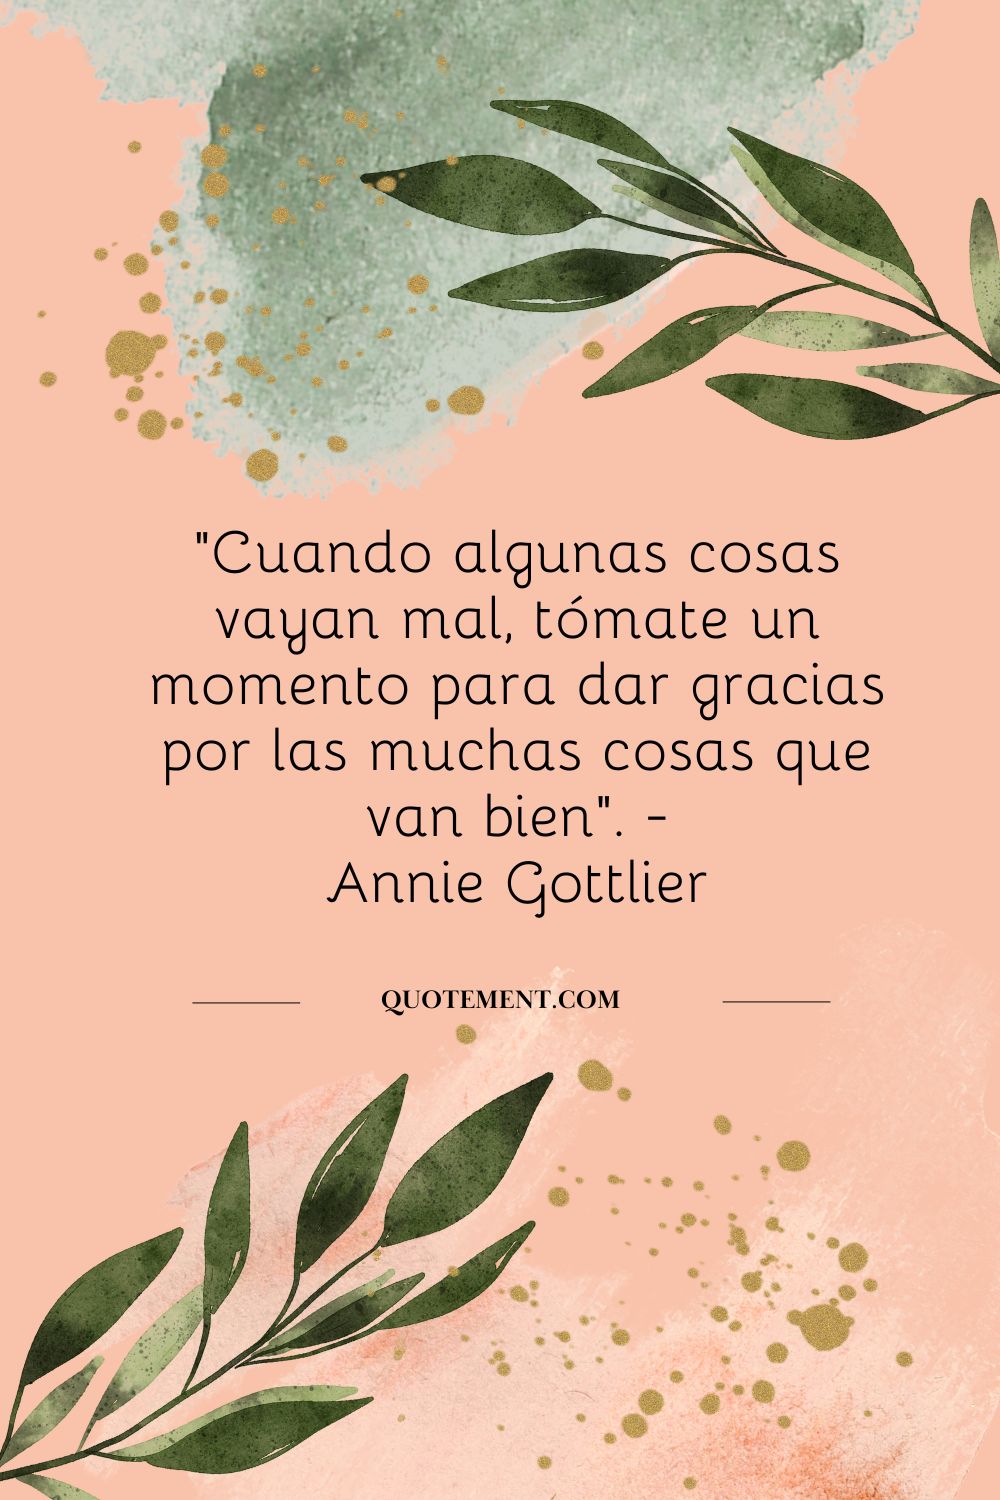 "Cuando algunas cosas vayan mal, tómate un momento para agradecer las muchas cosas que van bien". - Annie Gottlier